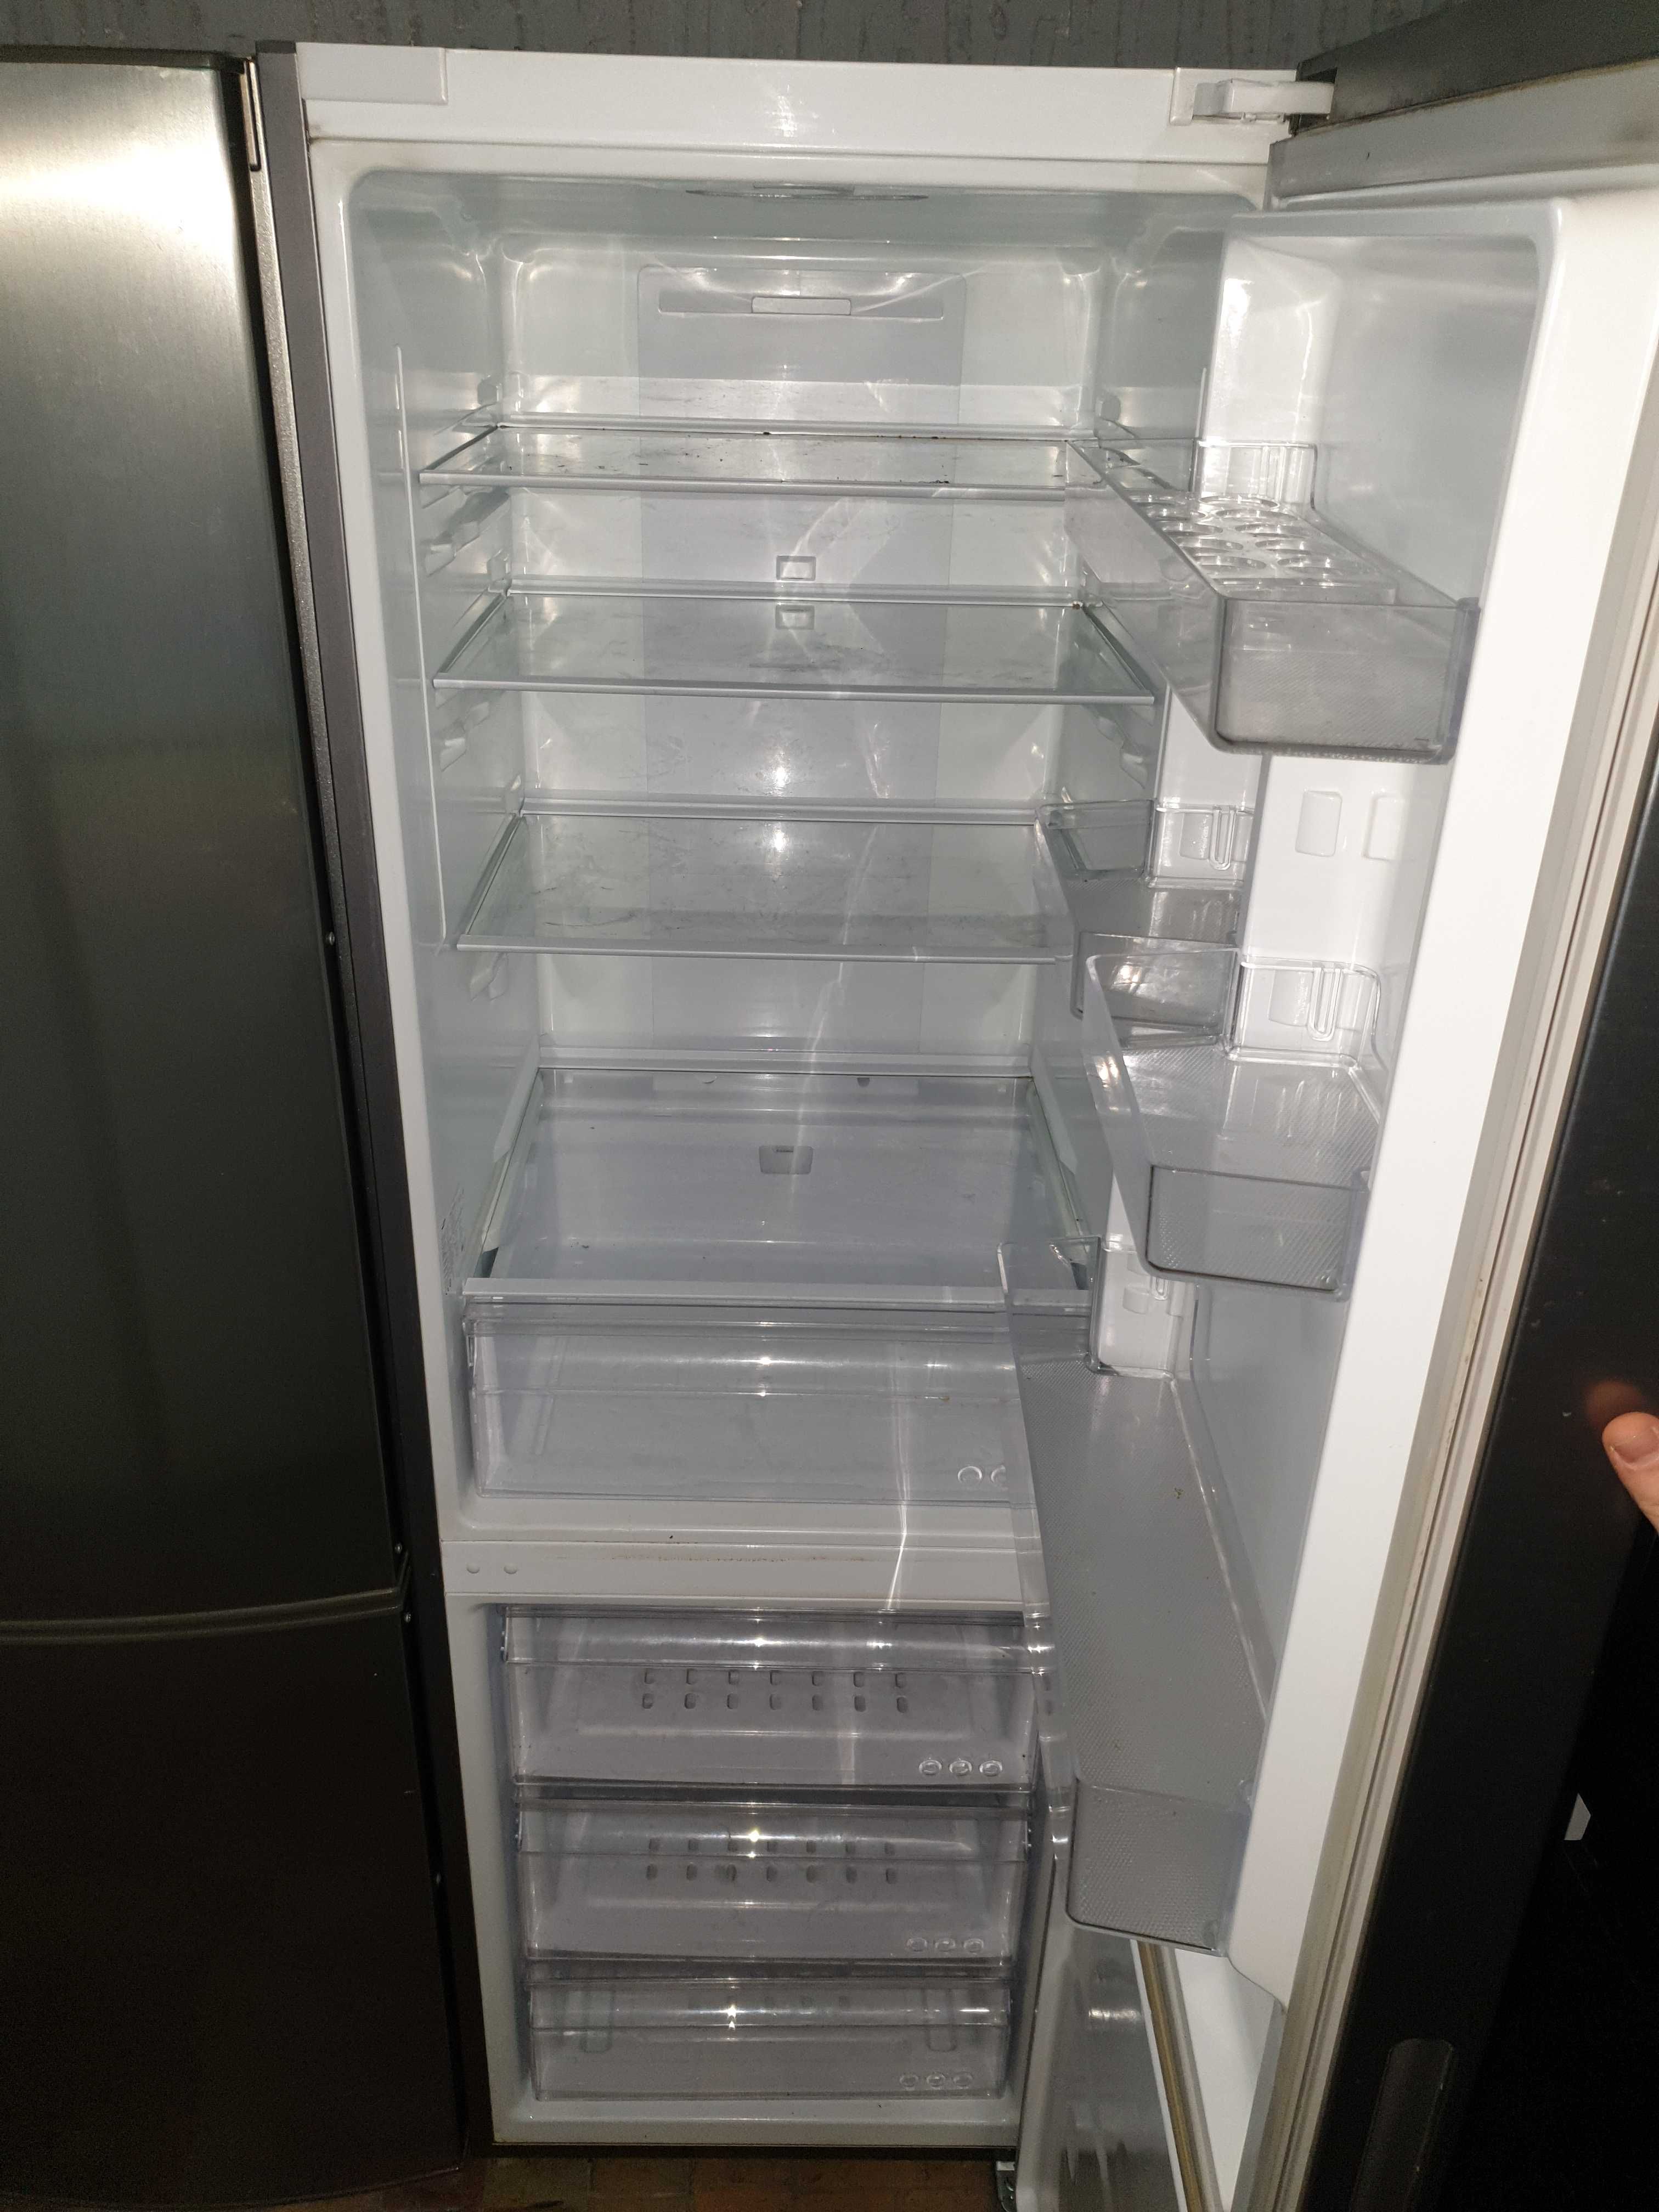 Холодильник ідеальний стан Samsung IKB59 Premium чорний, гарантія